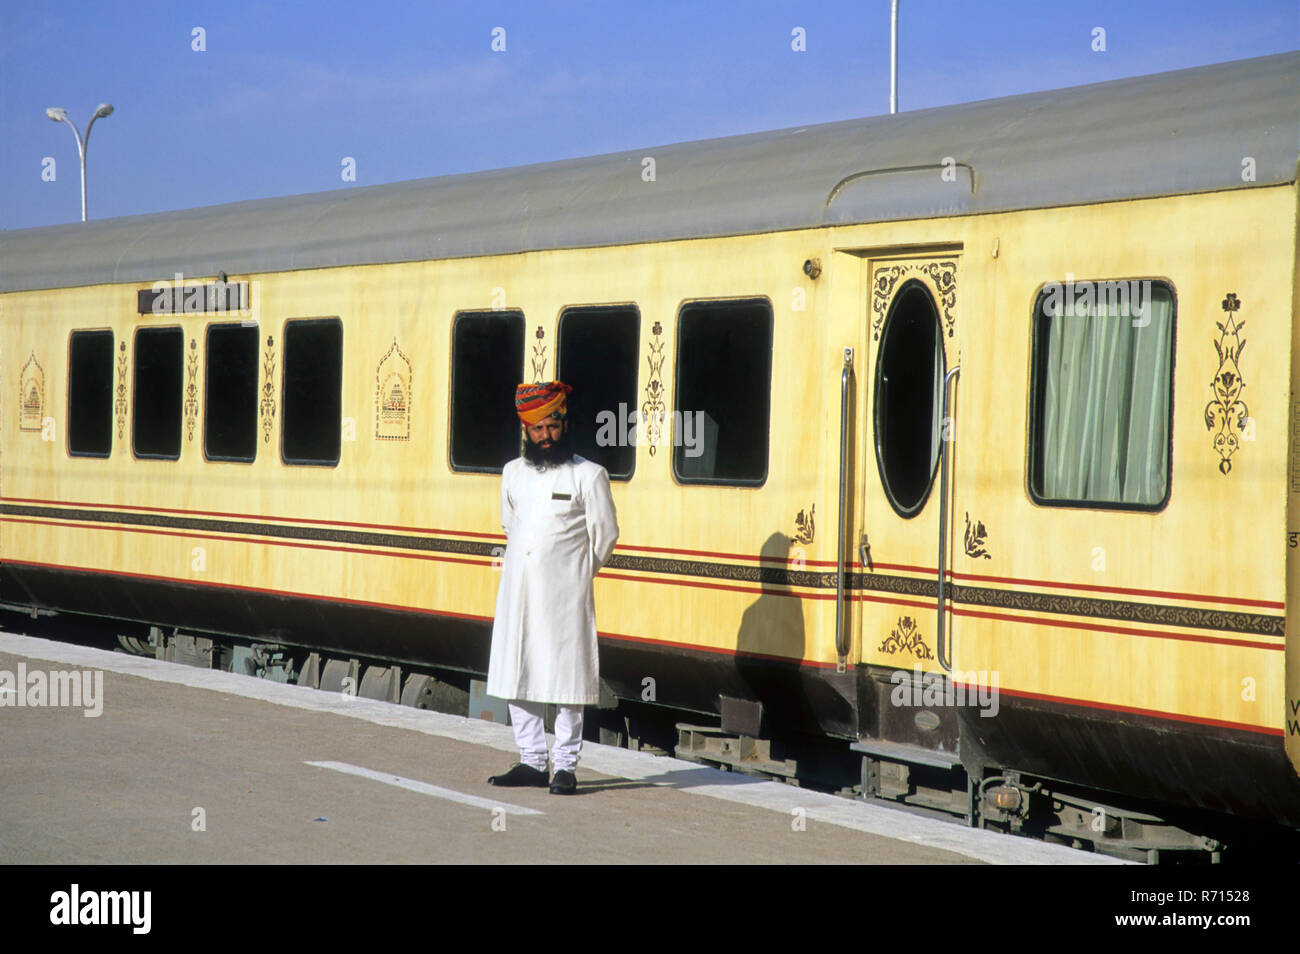 Les chemins de fer, trains d'accompagnateur du Rajasthan palace sur roue, jaislamer, Rajasthan, Inde Banque D'Images